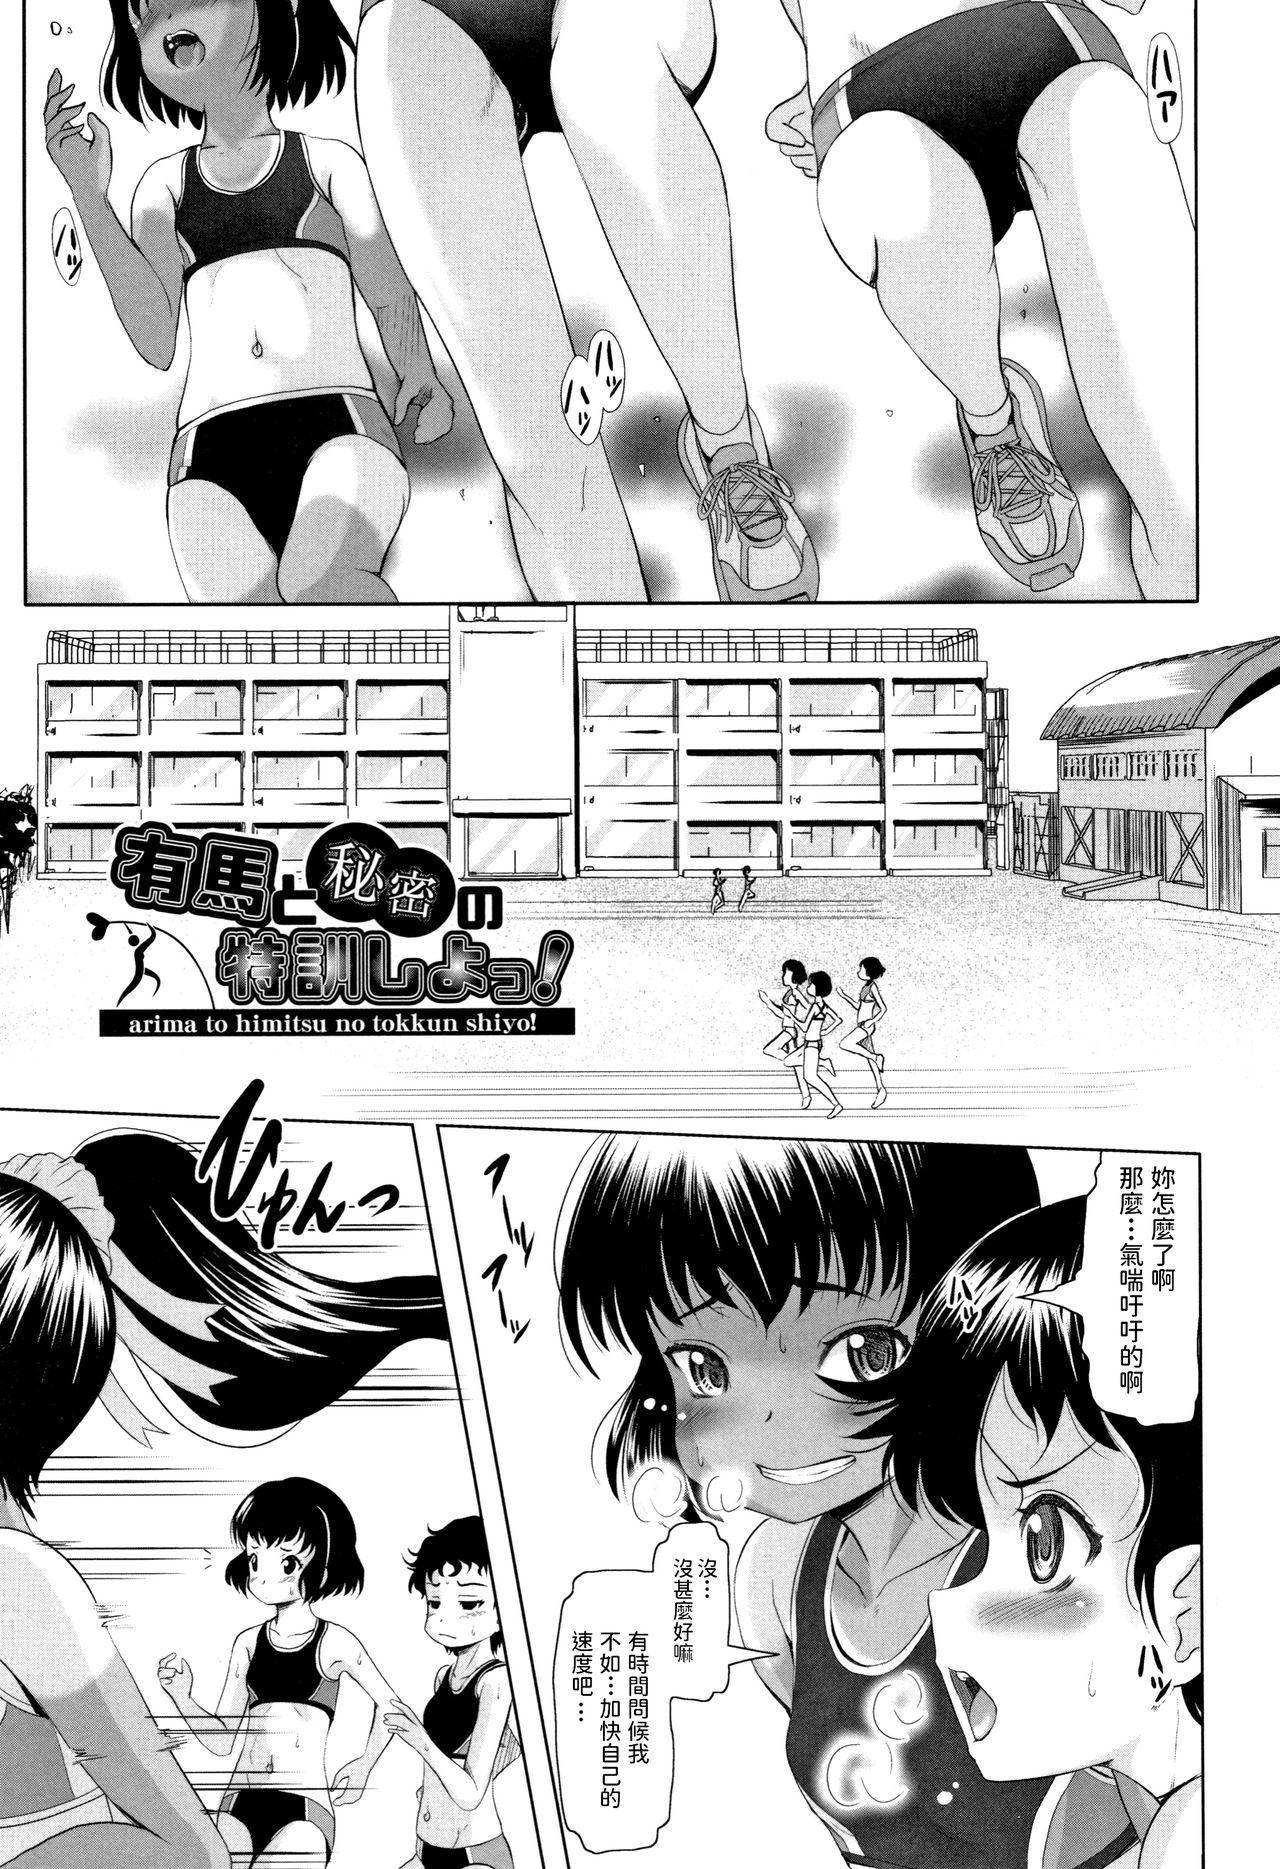 Teenage Sex Arima to Himitsu no Tokkun Shiyo! Spread - Page 1